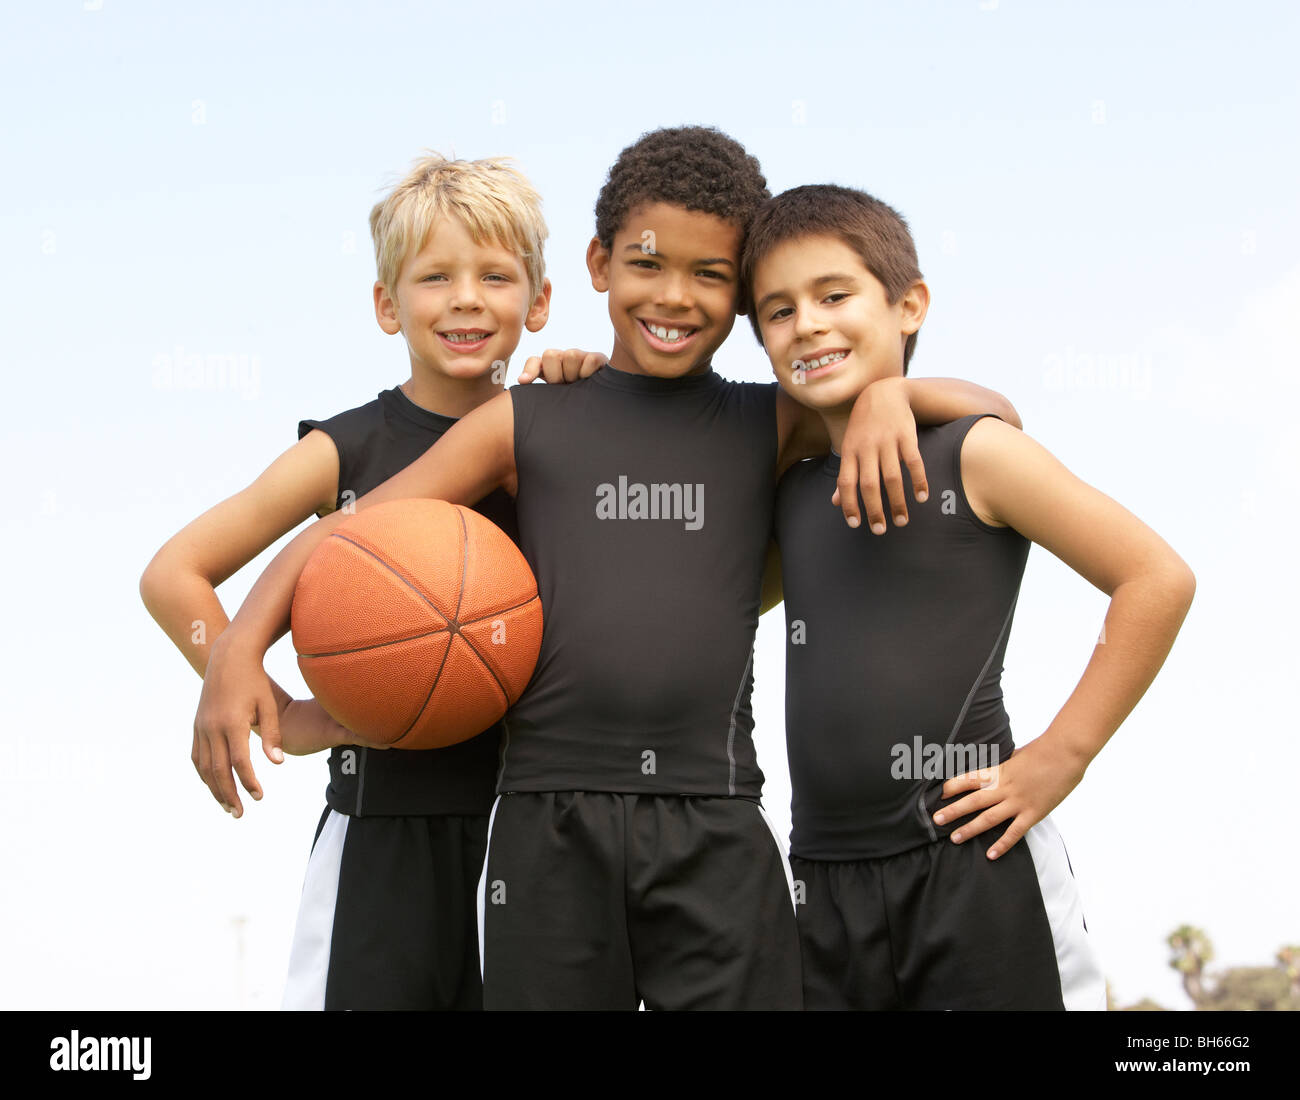 Les jeunes garçons dans l'équipe de basket-ball Banque D'Images